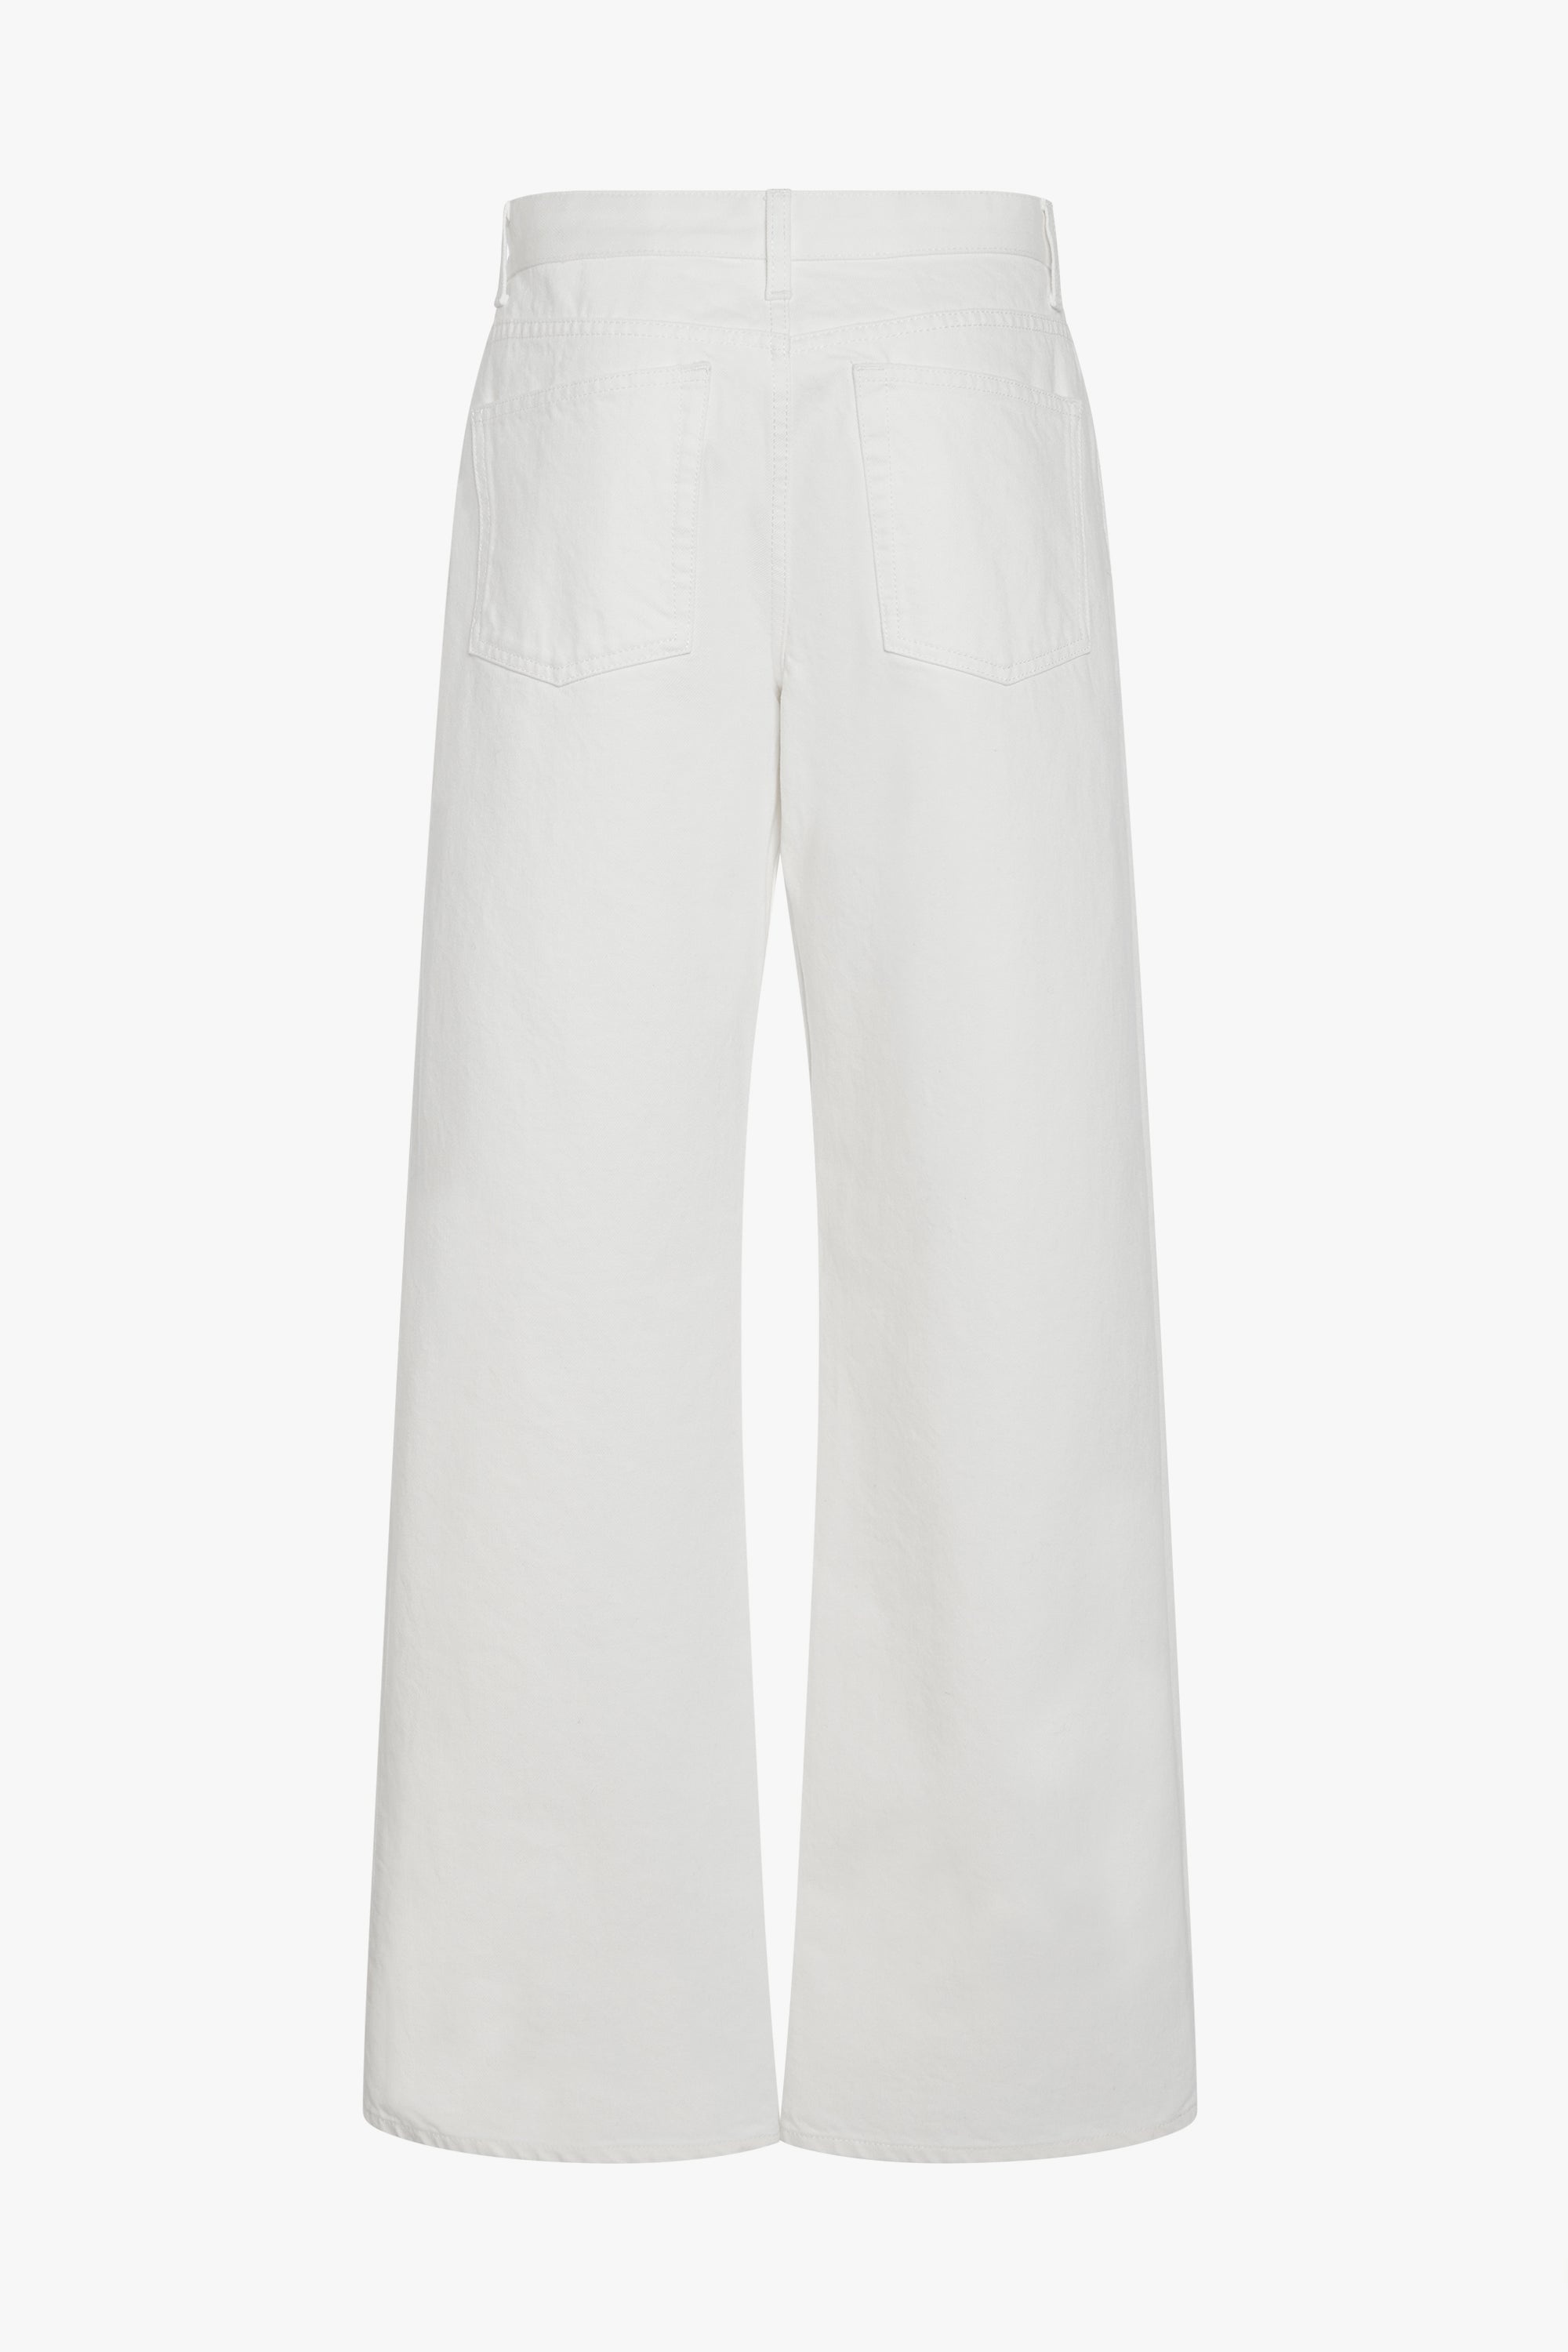 Eglitta Jeans in Cotton - 2